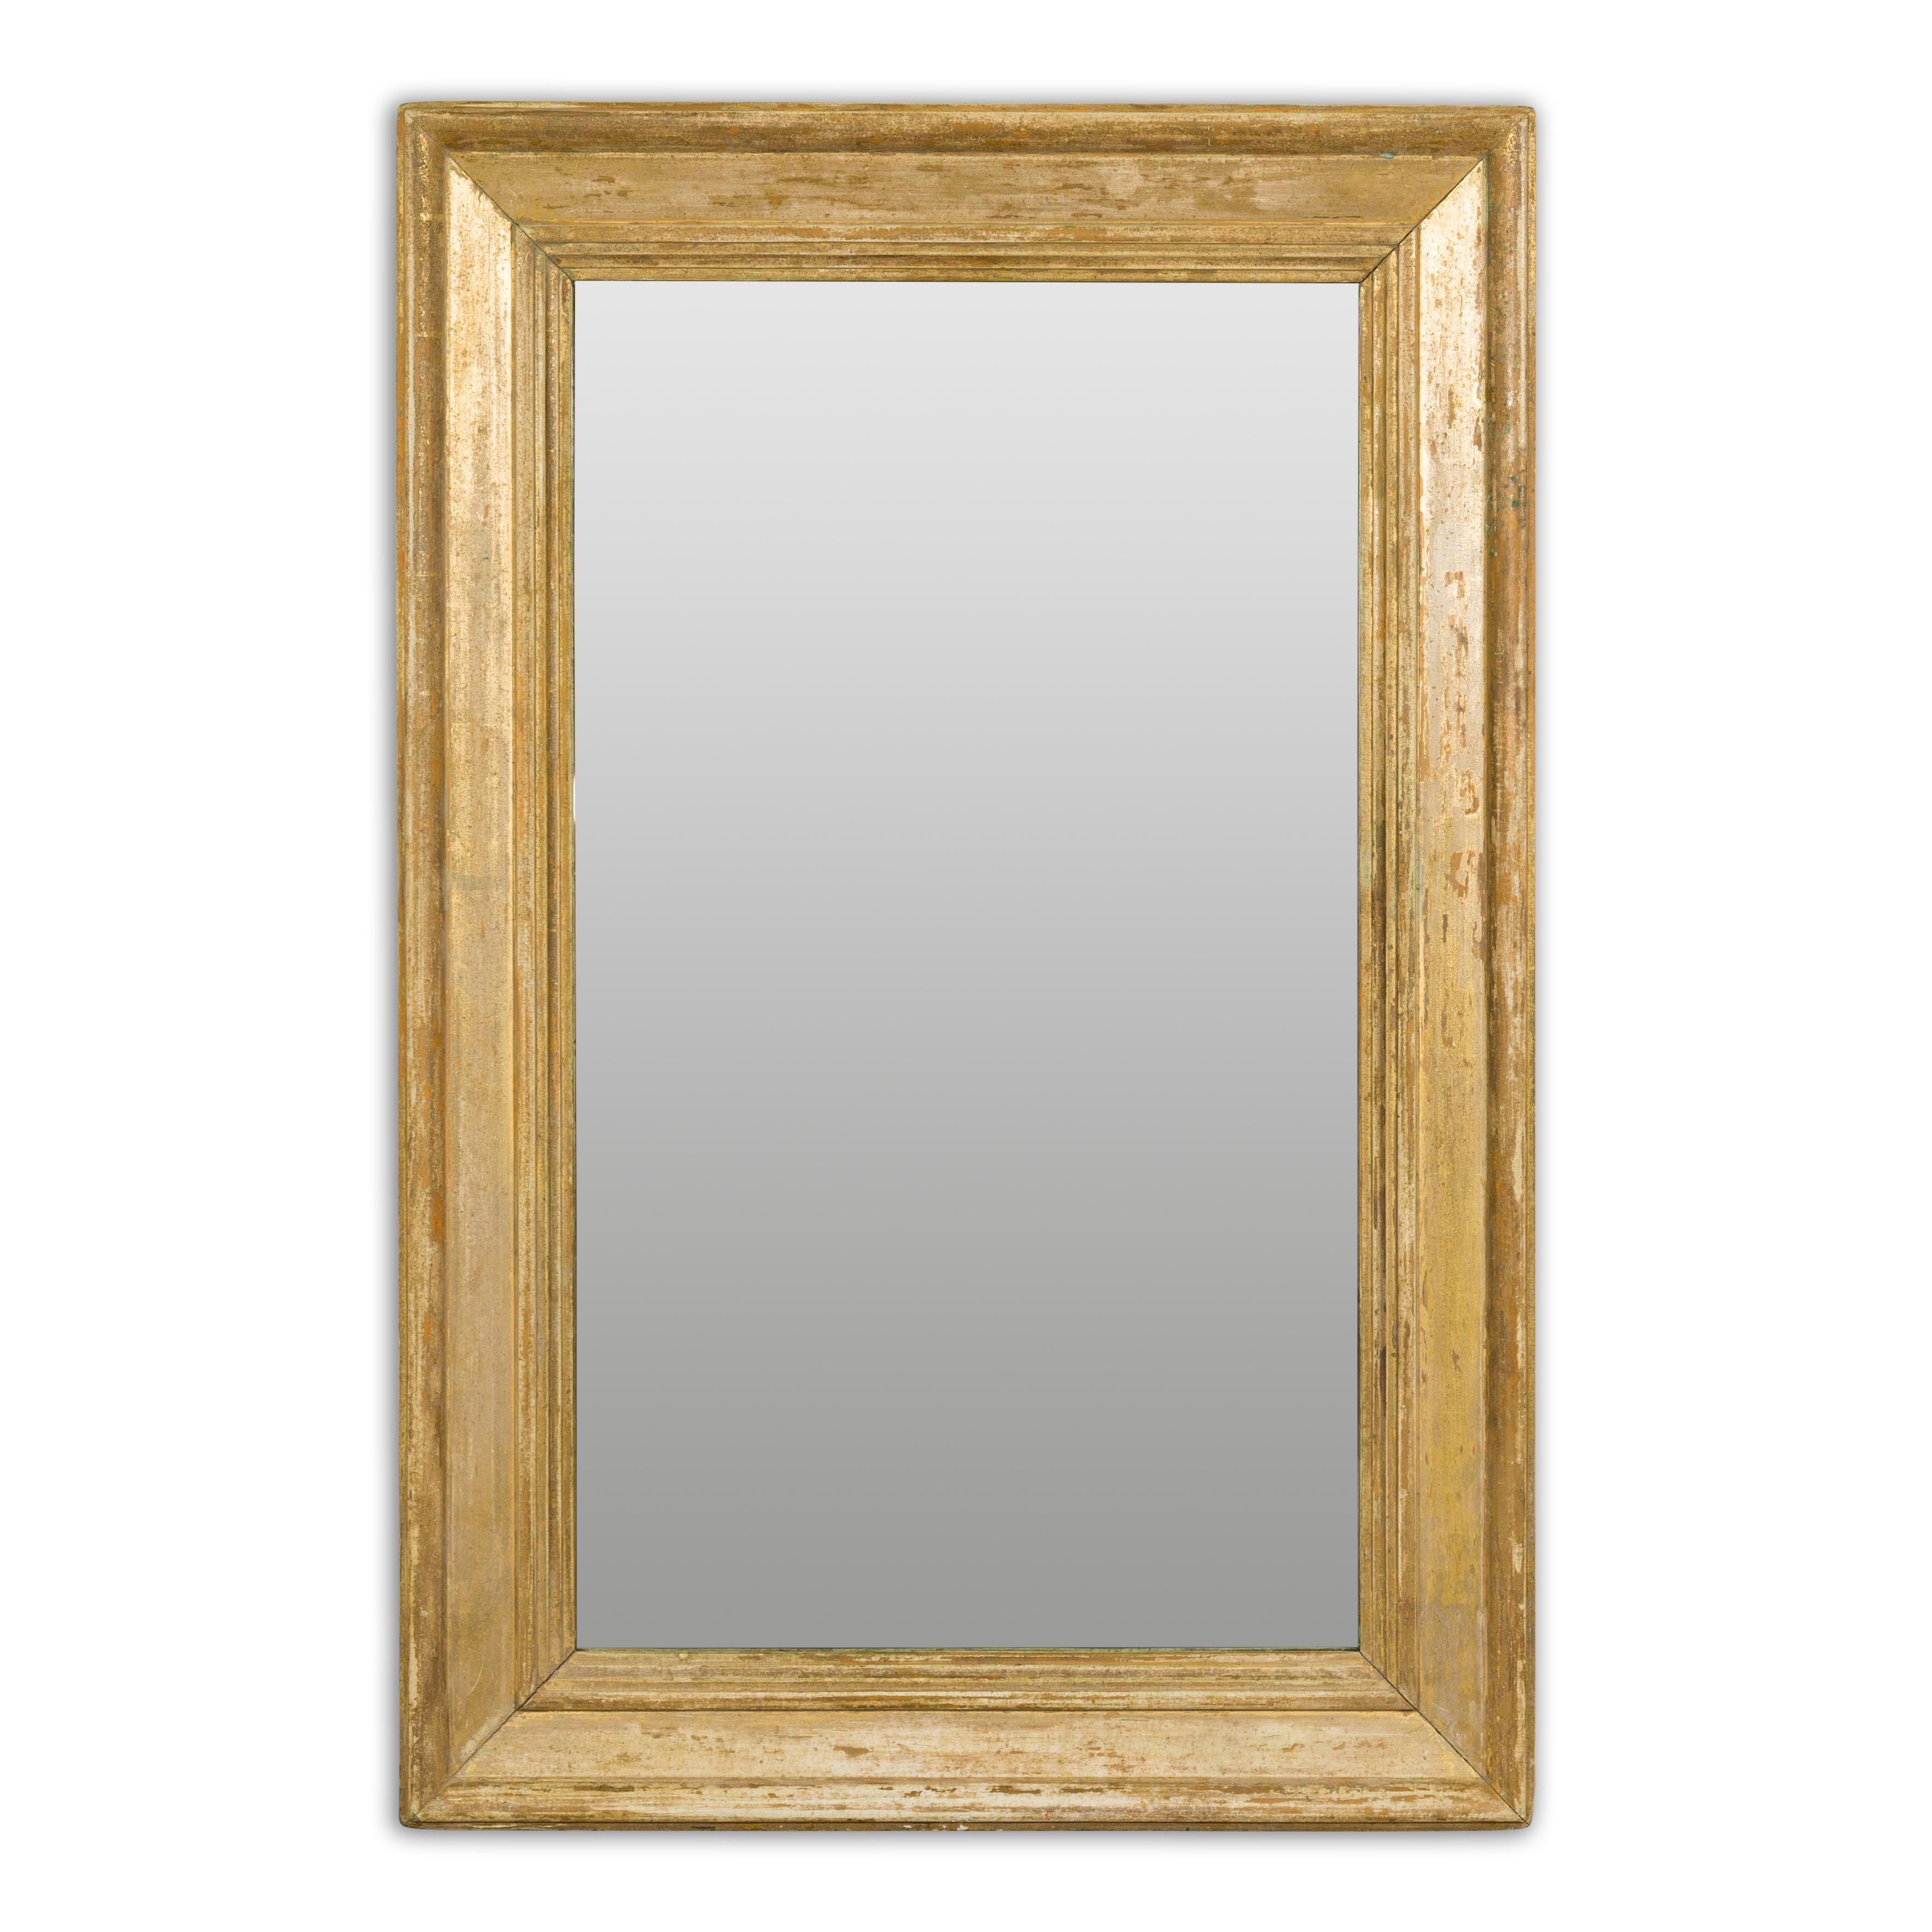 Ein französischer rechteckiger Spiegel aus dem 19. Jahrhundert, der mit goldenen Farbtönen bemalt und mit geformten Akzenten versehen ist. Dieser rechteckige Spiegel, der die raffinierte Eleganz des französischen Designs des 19. Jahrhunderts